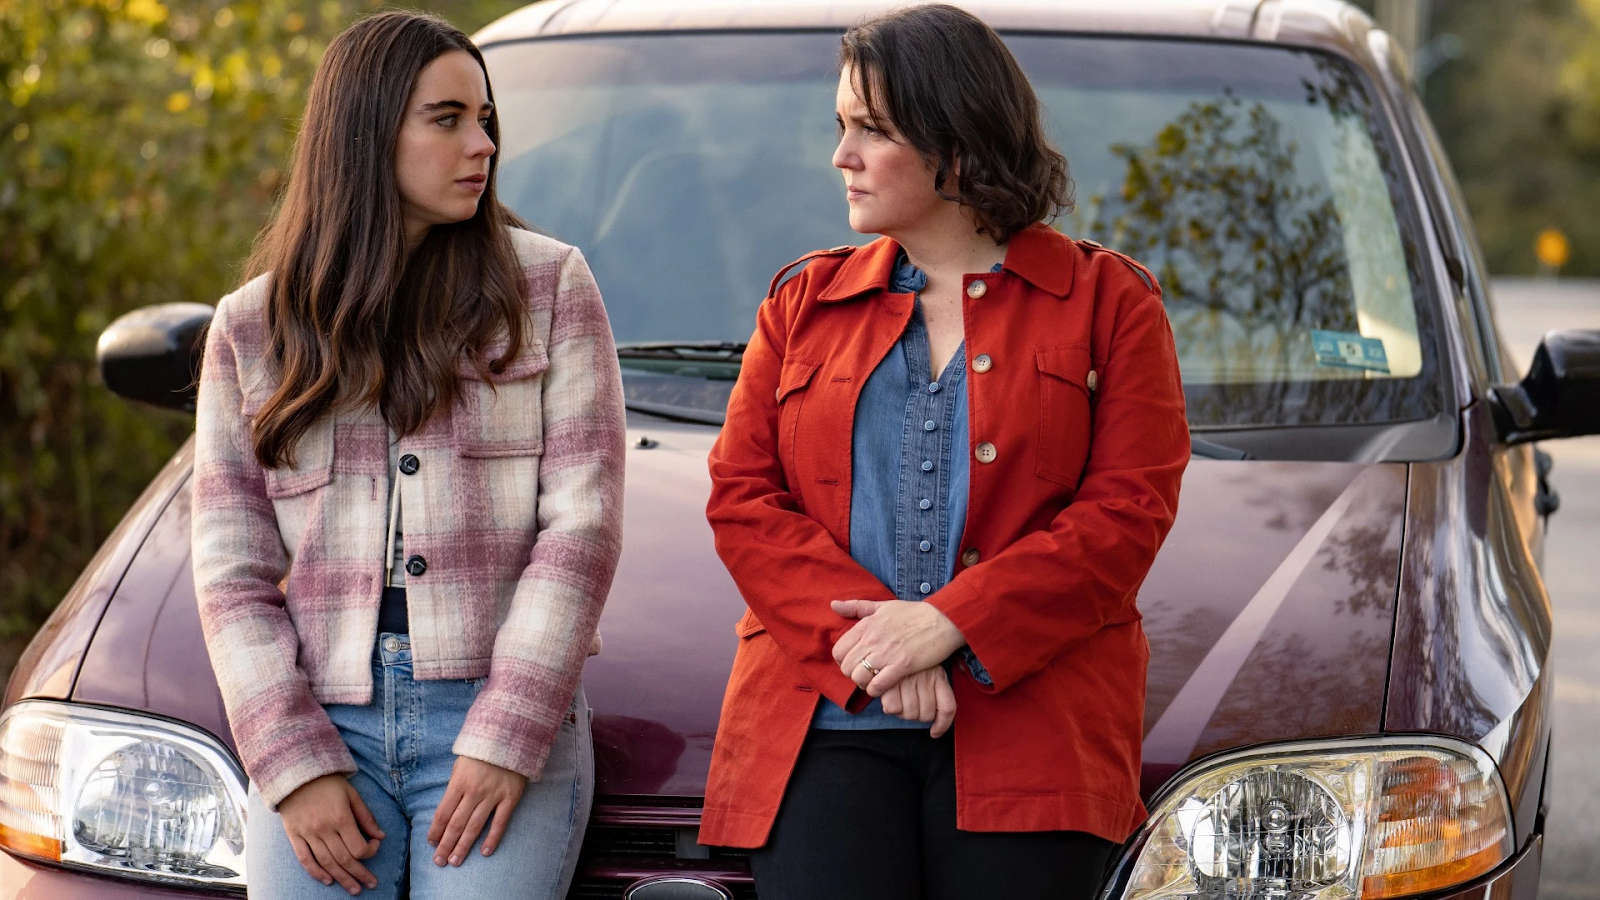  Cena da segunda temporada de Yellowjackets. Shauna (Melanie Lynskey) e Callie (Sarah Desjardins) conversam apoiadas no capô de um sedan vermelho. Shauna, à direita, é uma mulher caucasiana de meia idade, cabelos pretos até os ombros, usando uma jaqueta vermelha por cima de uma camisa azul e calças azuis-escuras. Callie, à esquerda, é uma adolescente caucasiana de cabelos castanhos-escuros longos, usando um casaco xadrez branco e rosa fechado com calças jeans. Shauna segura suas mãos, observando intensamente Callie, que por sua vez apoia suas mãos nas coxas, olhando temerosa para a mãe. As duas estão paradas no meio de uma estrada, durante o dia, e podemos ver alguns arbustos fora de foco no canto esquerdo da tela, enquanto a estrada continua pelo canto direito, também fora de foco.